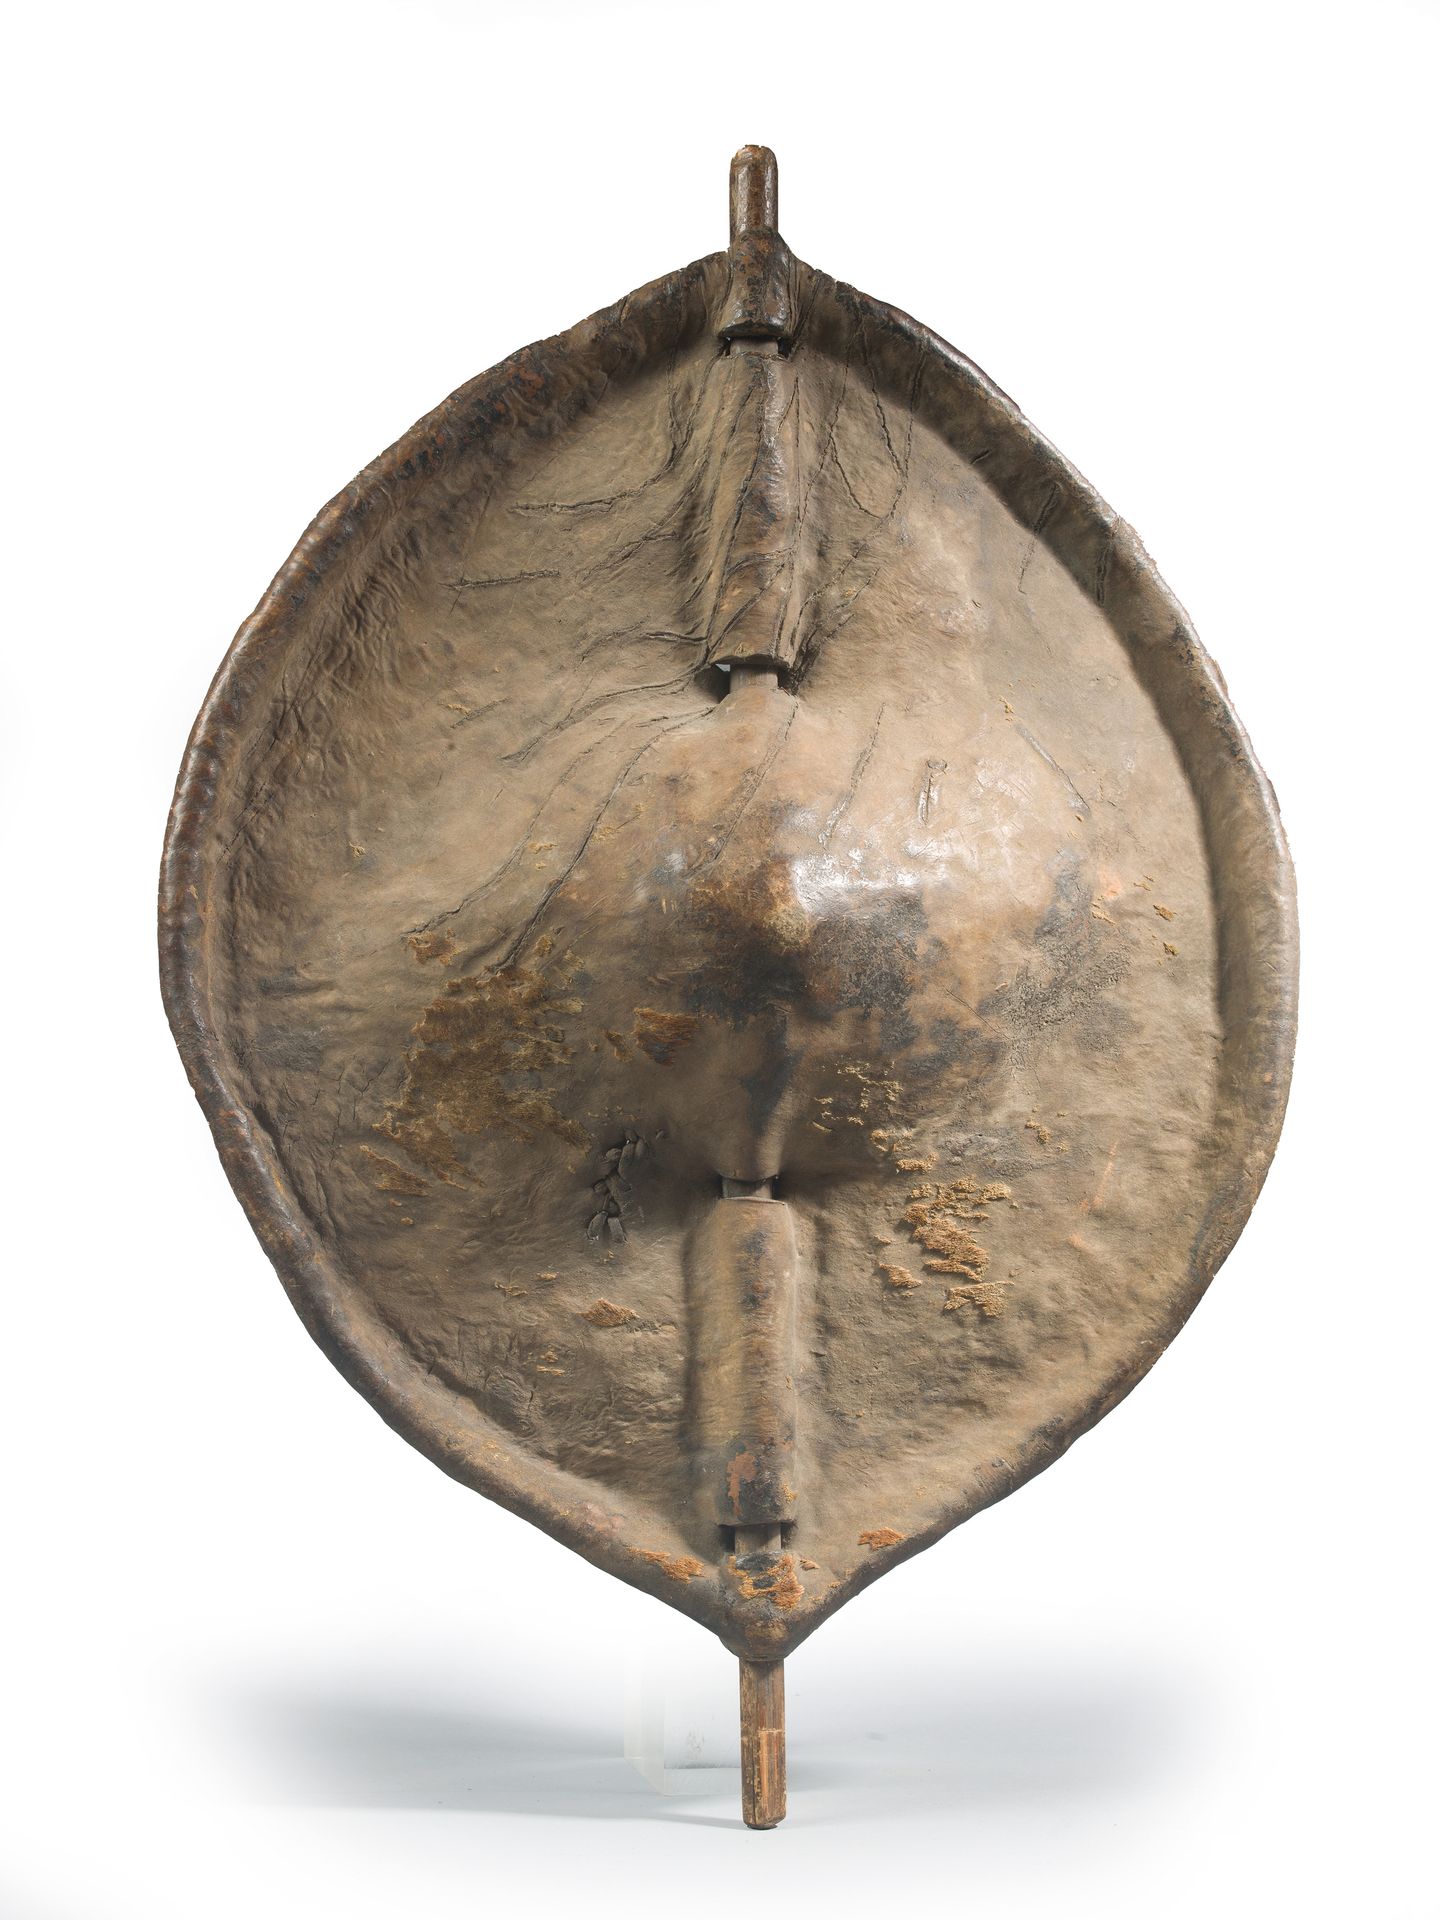 Null BOUCLIER DINKA

Soudan XIXe-XXe siècle

Bois et peau

49 x 69 cm